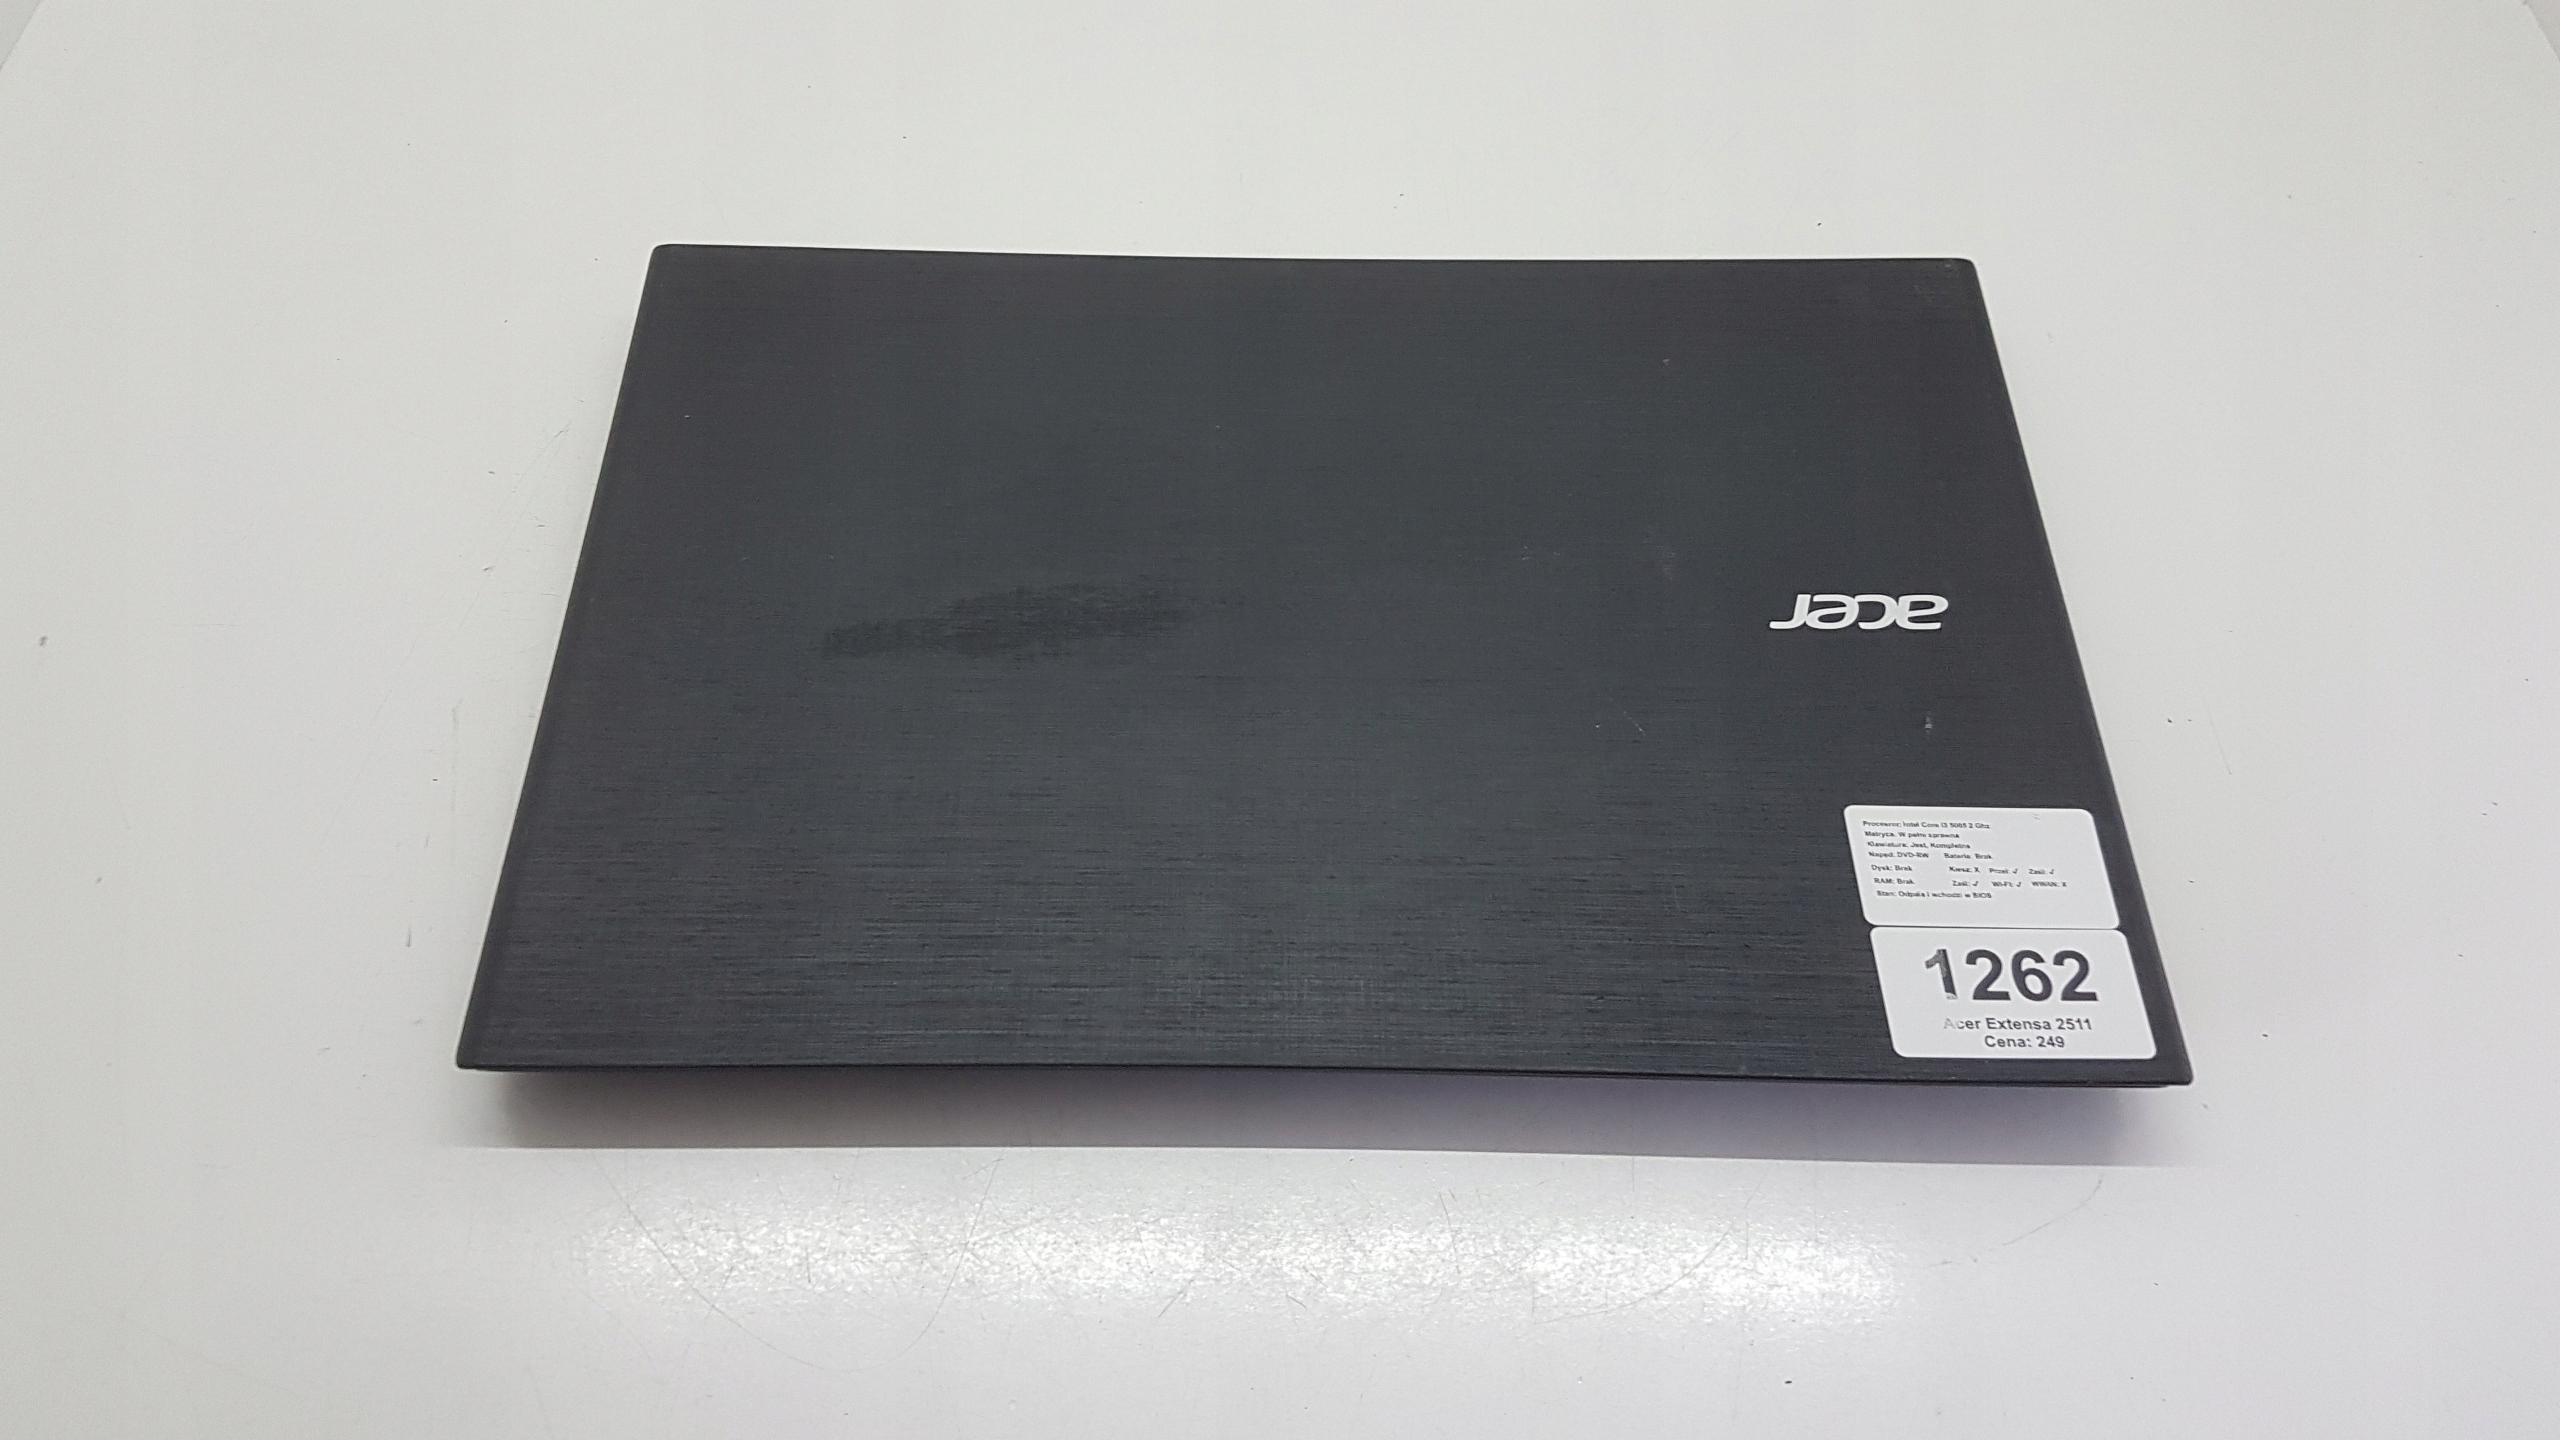 Notebook Acer Extensa 2511 (1262).